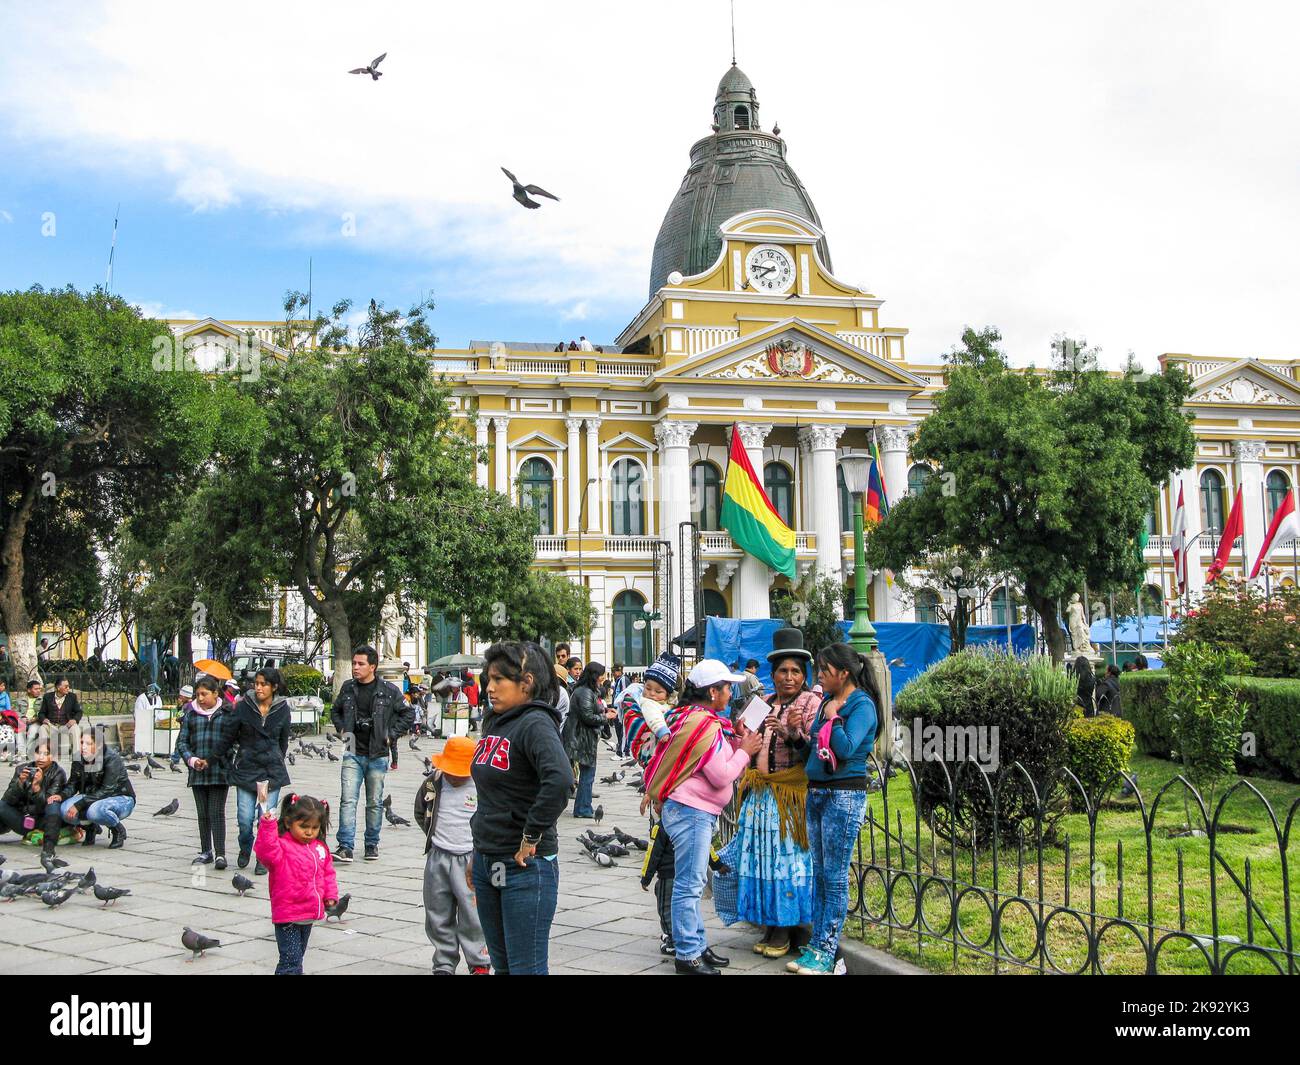 LA PAZ, BOLIVIEN - 21. JANUAR 2015: Menschen im Legislativpalast, seit 1905 Sitz der Regierung, auf der Plaza Murillo in der Stadt La Paz, Bolivien. Stockfoto